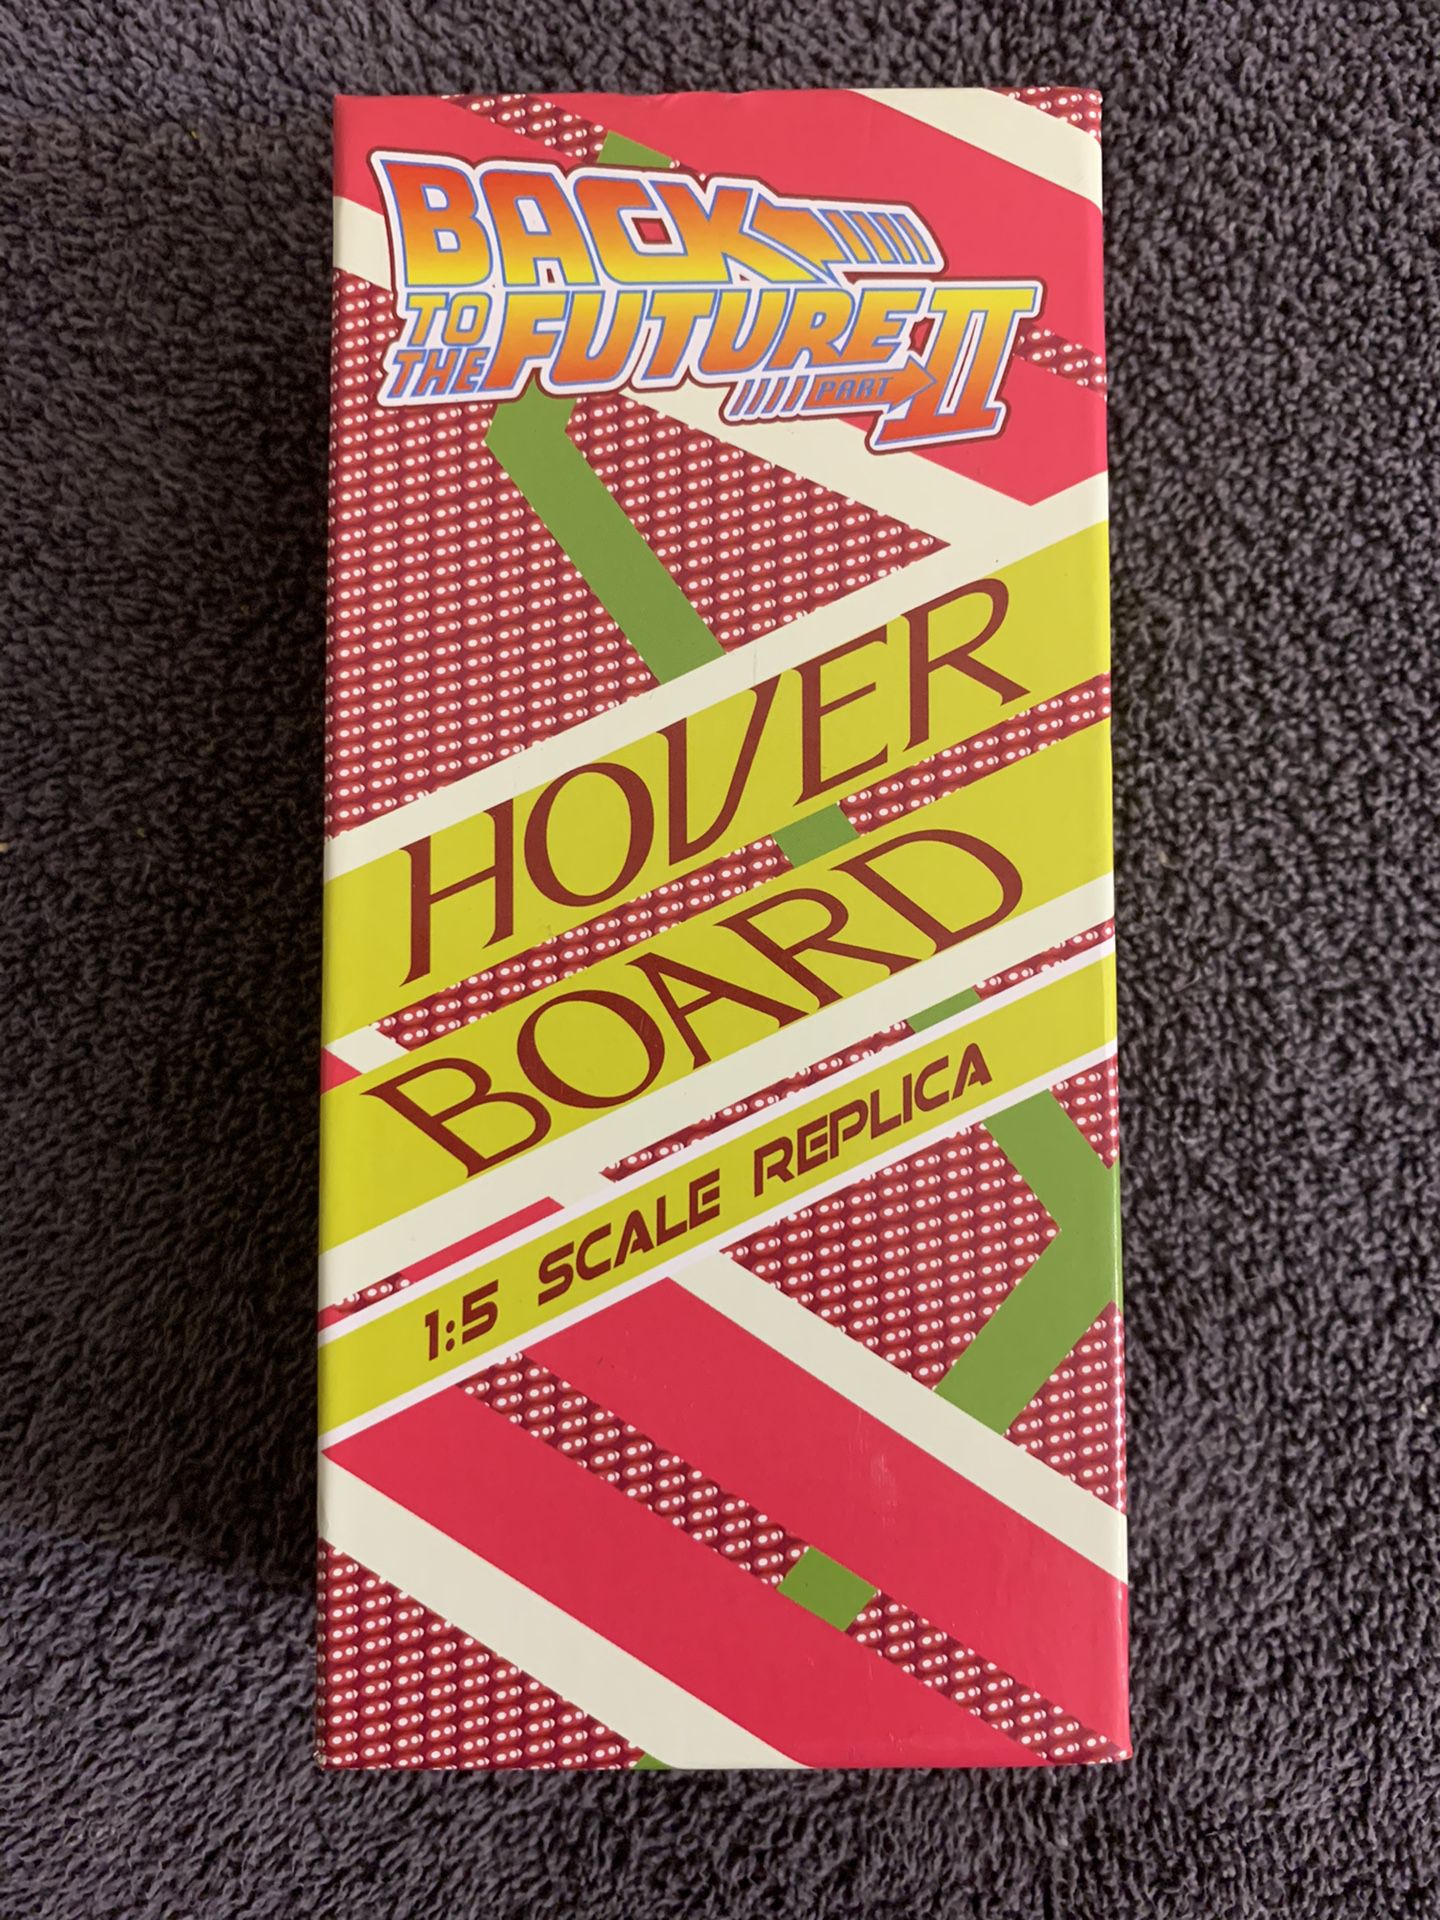 Back to the future II Hover Board 1:5 scale replica